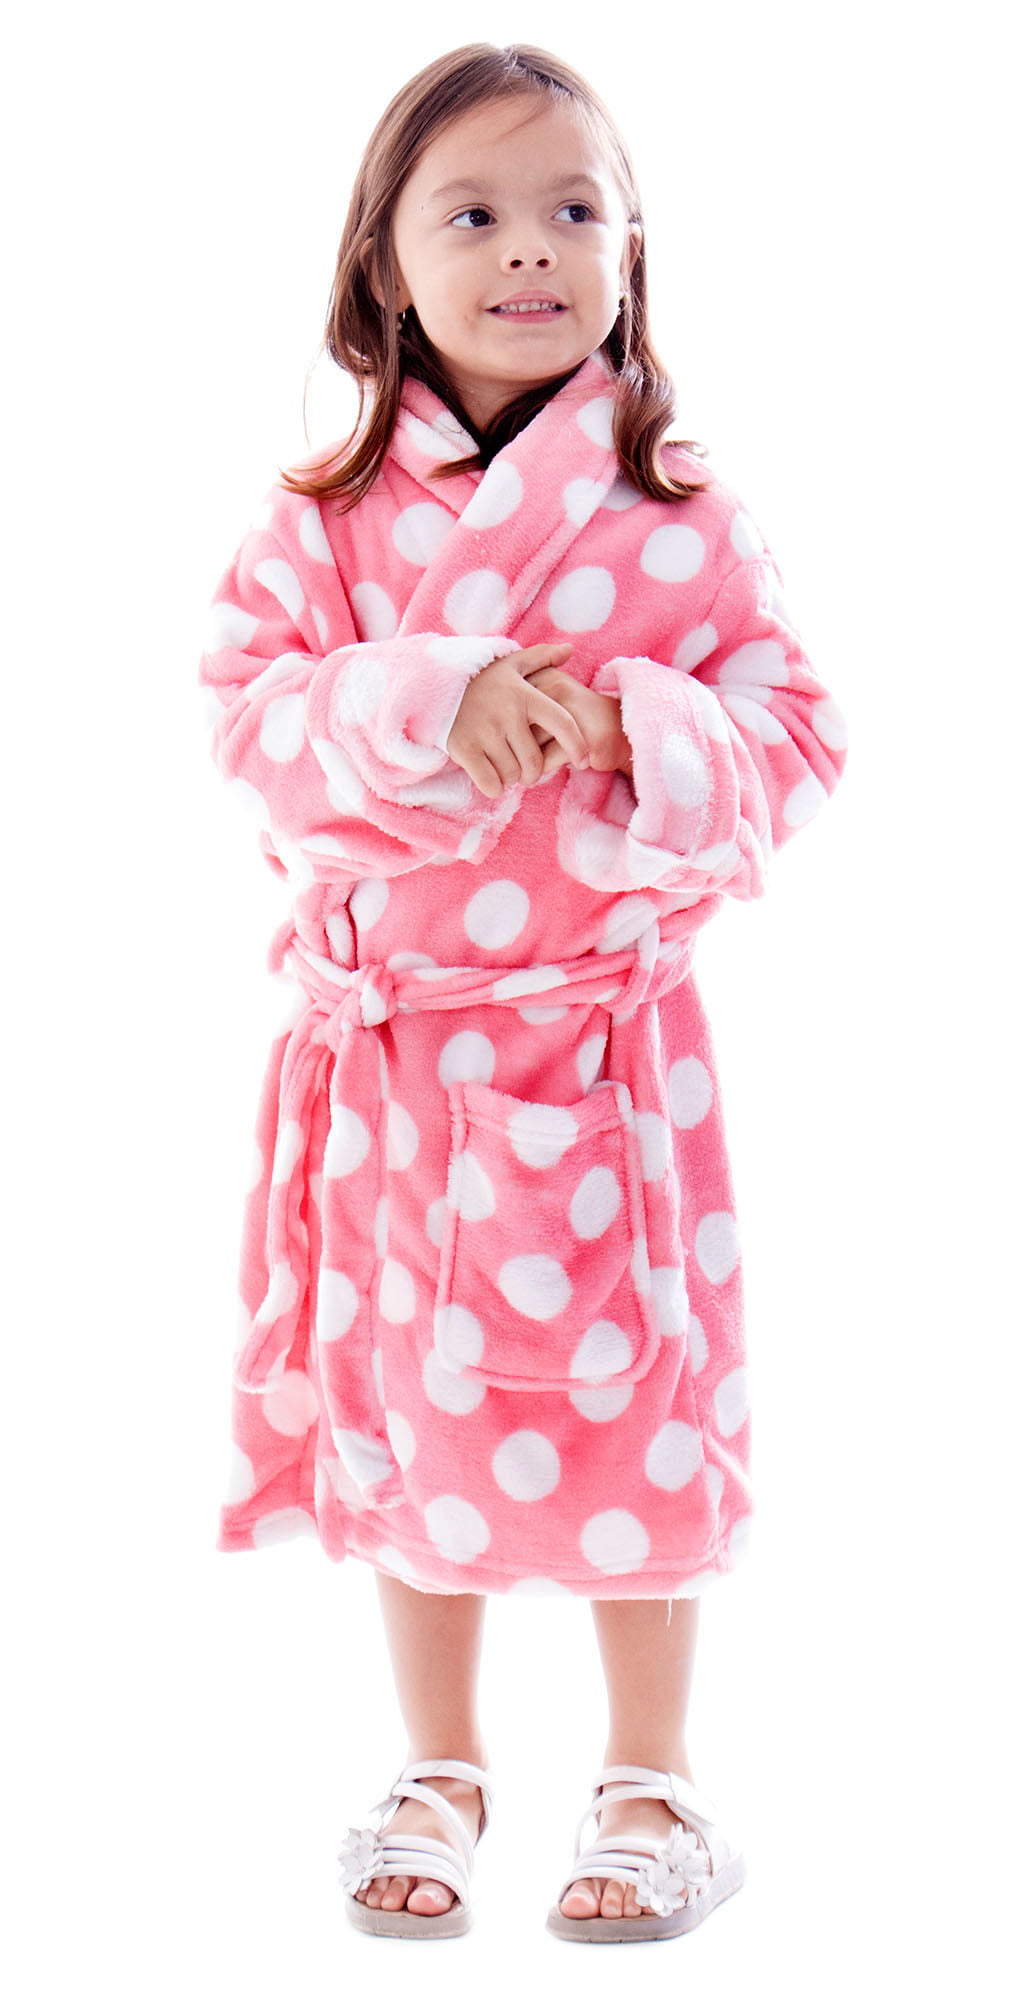 Dora Sparkles Robe Toddler Girls 2T Polka Dot Plush Fleece Bathrobe 